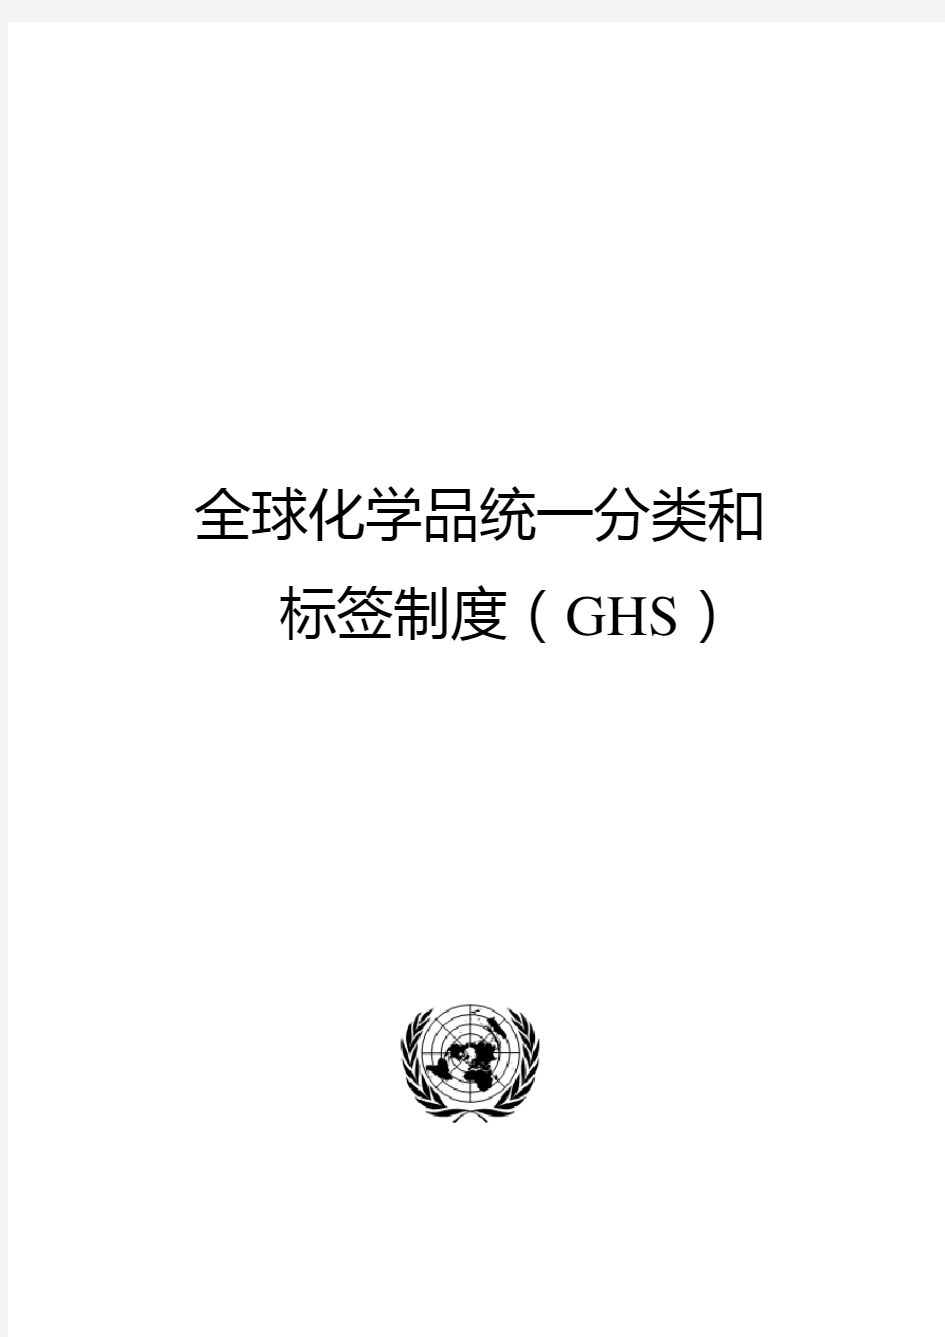 全球化学品统一分类和标签制度(GHS)简介